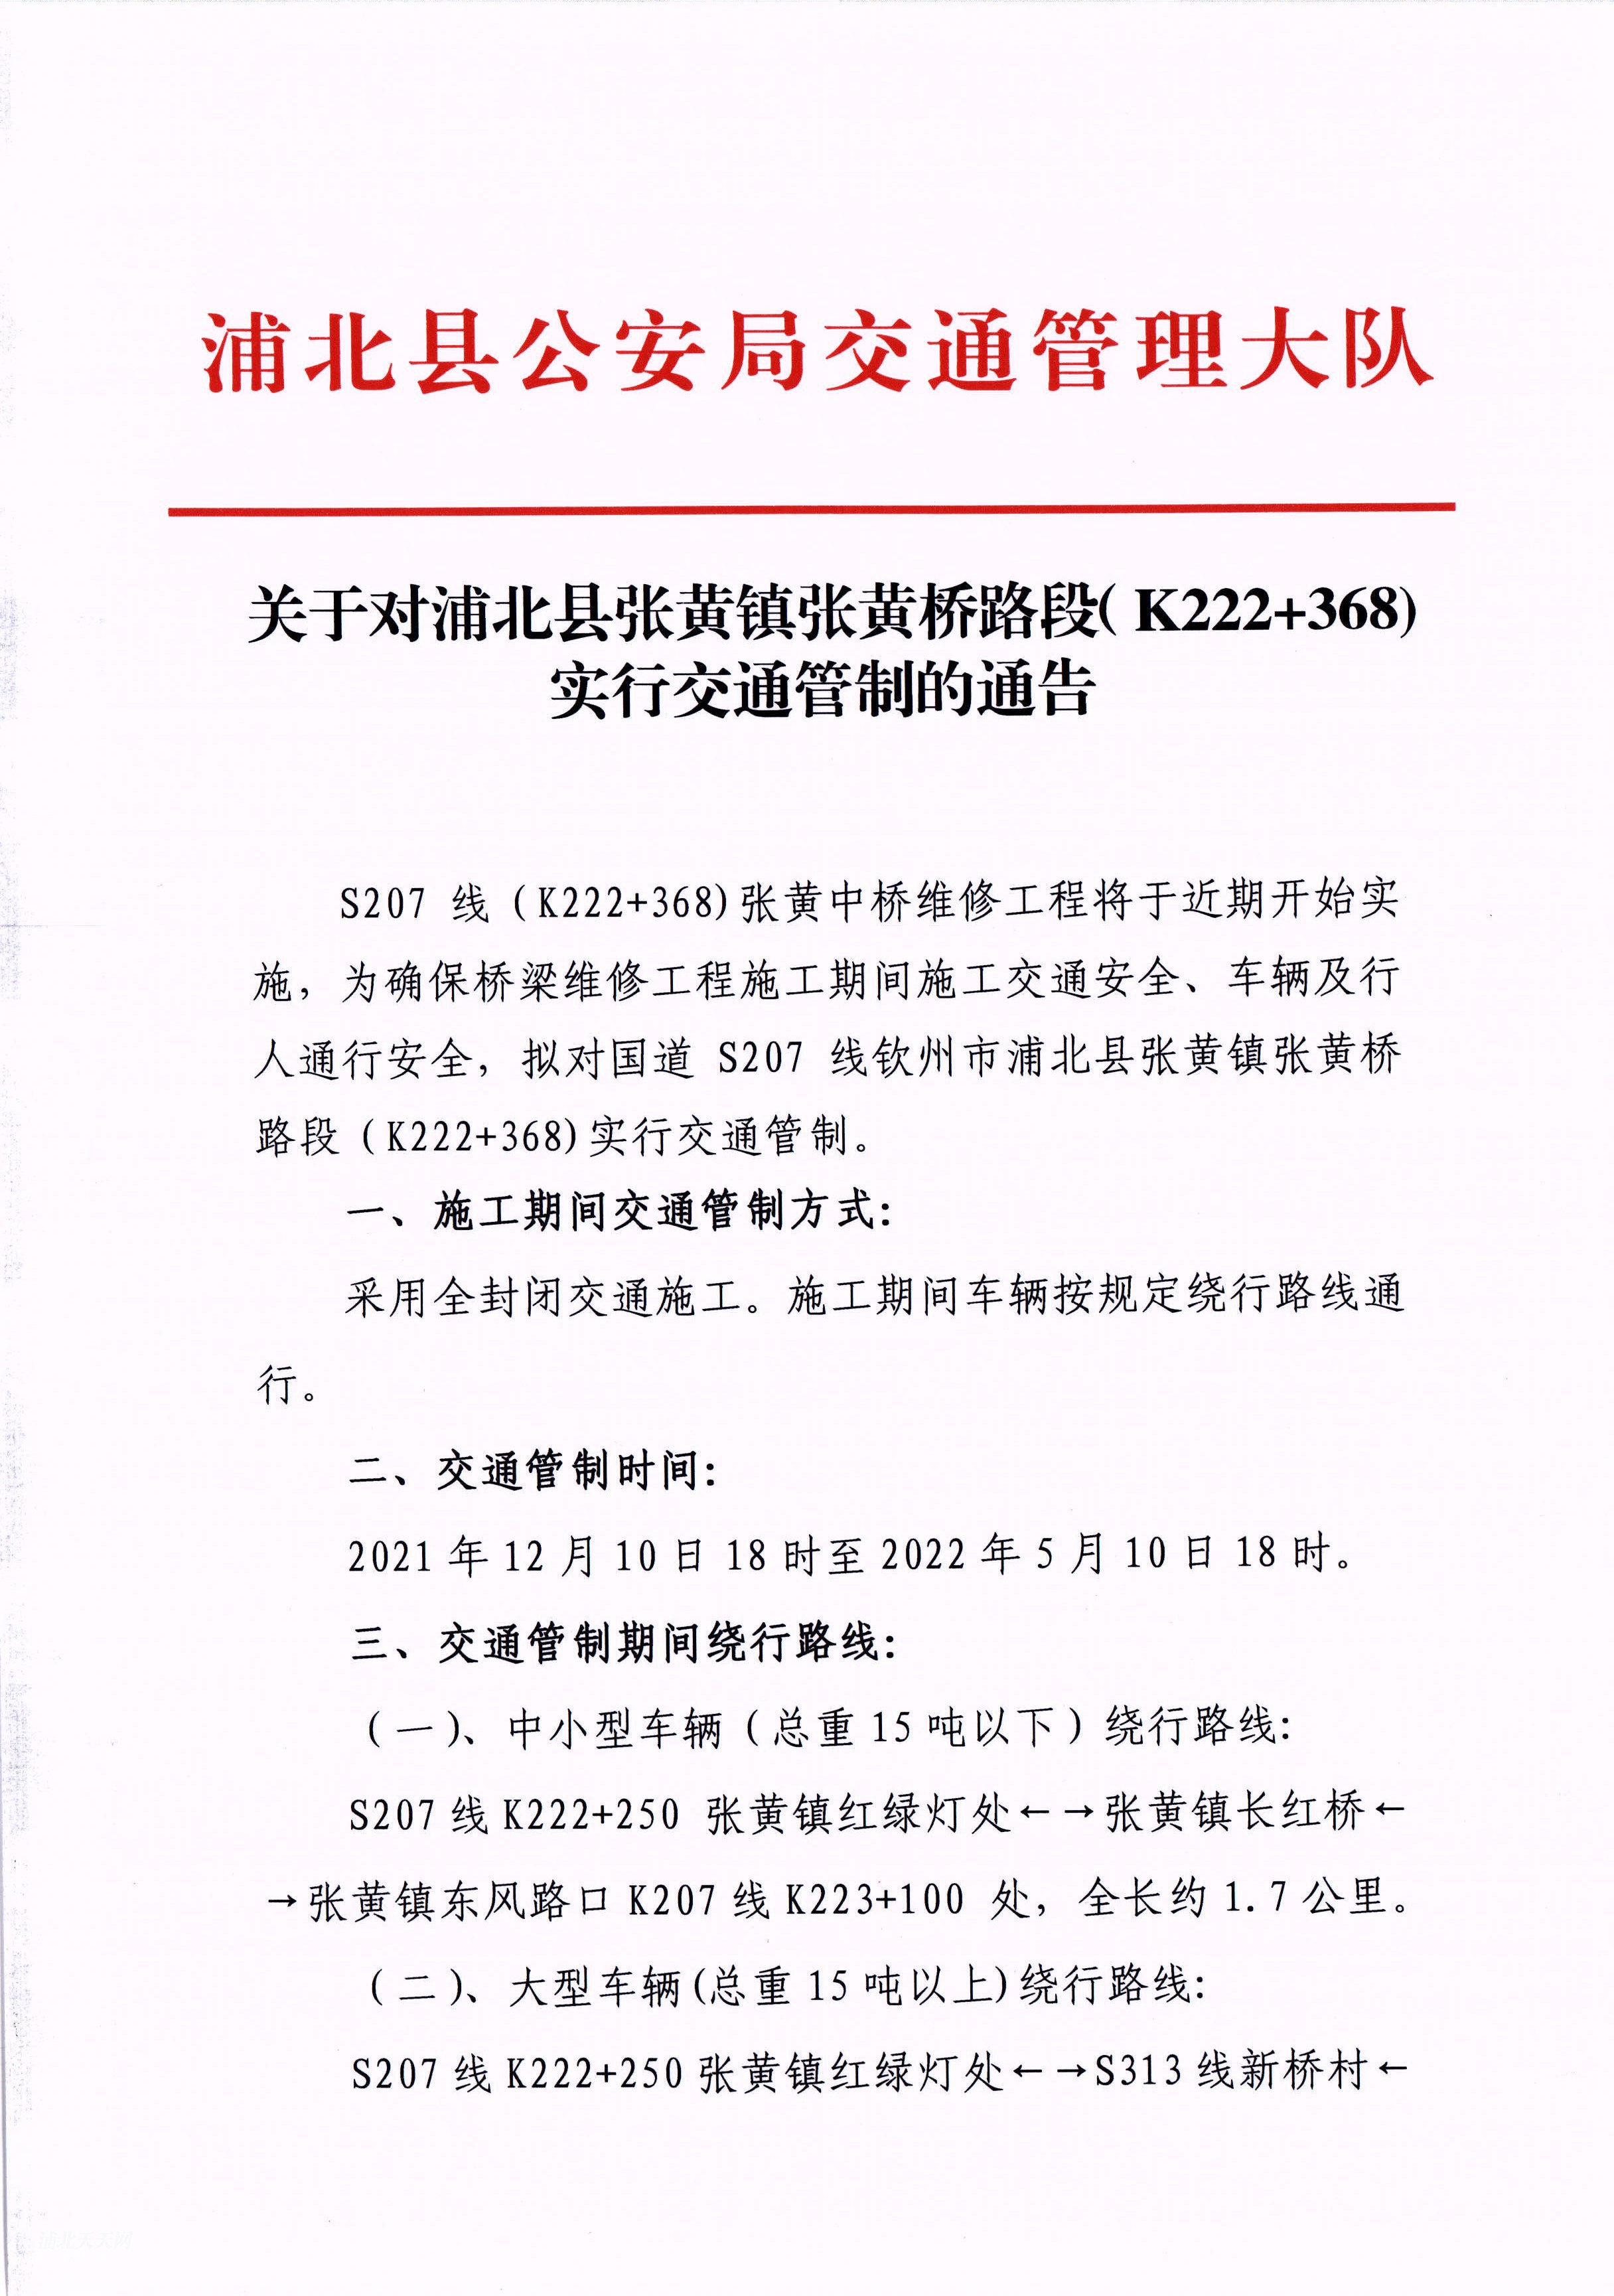 关于对浦北县张**张黄桥路段（K222+368)实行交通管制的通告 (1).jpg